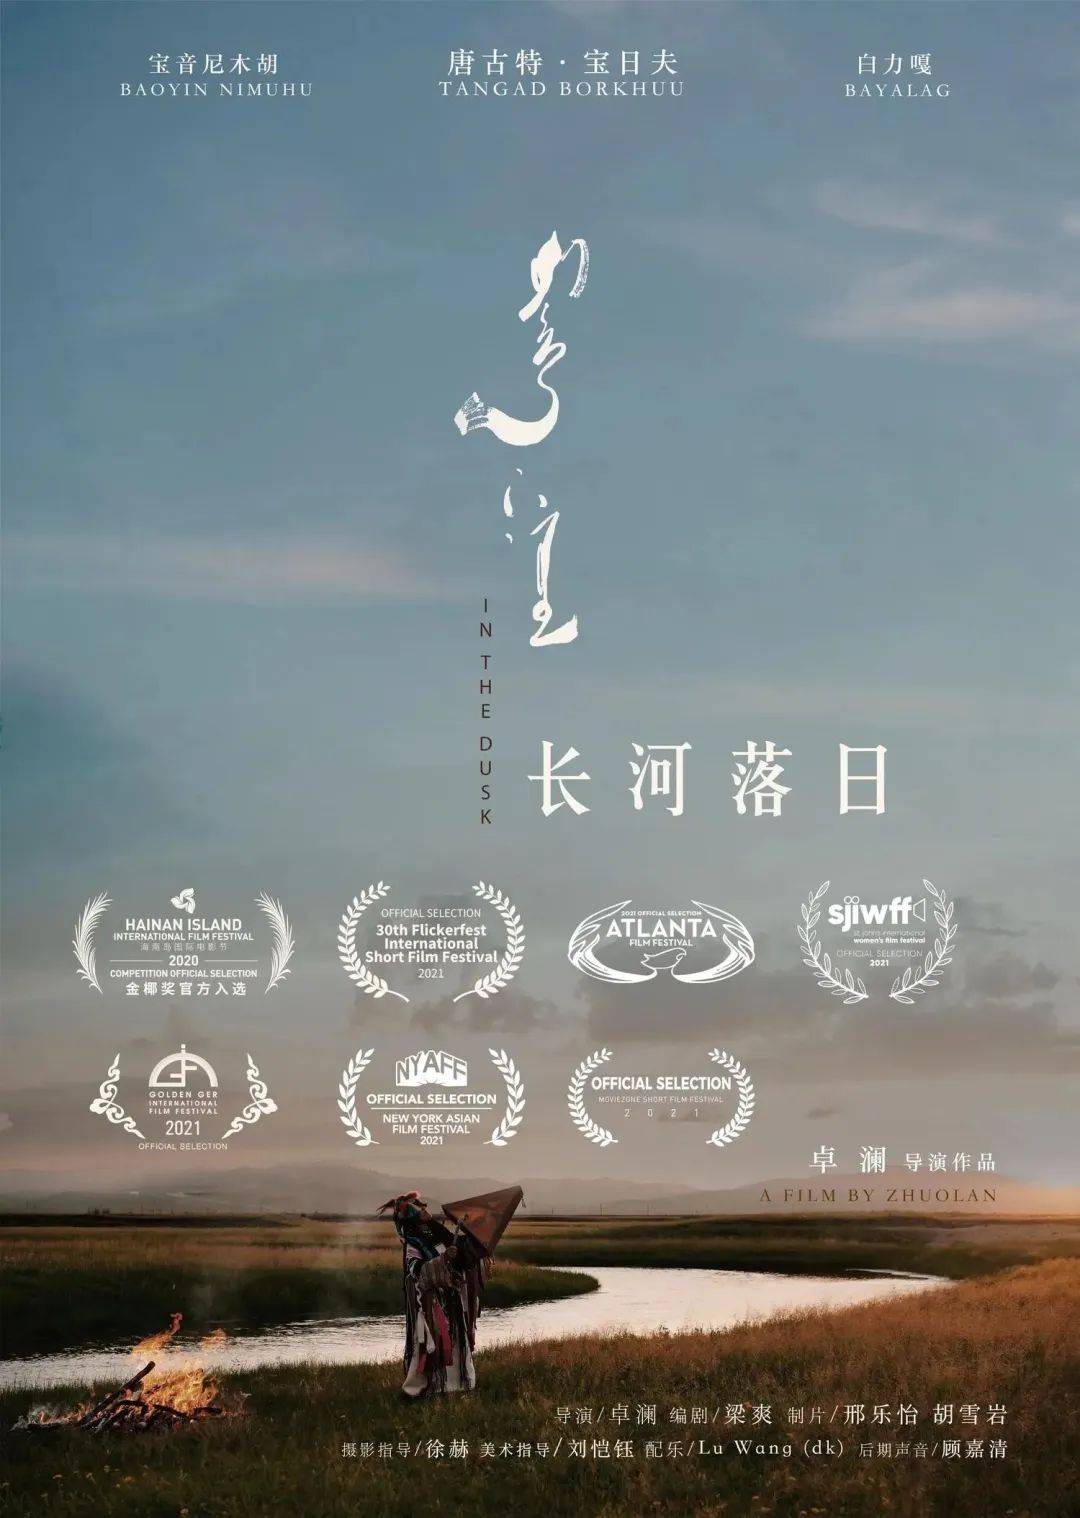 分《长河落日》姜晓萱,一名生长于内蒙古的导演,编剧,毕业于纽约大学